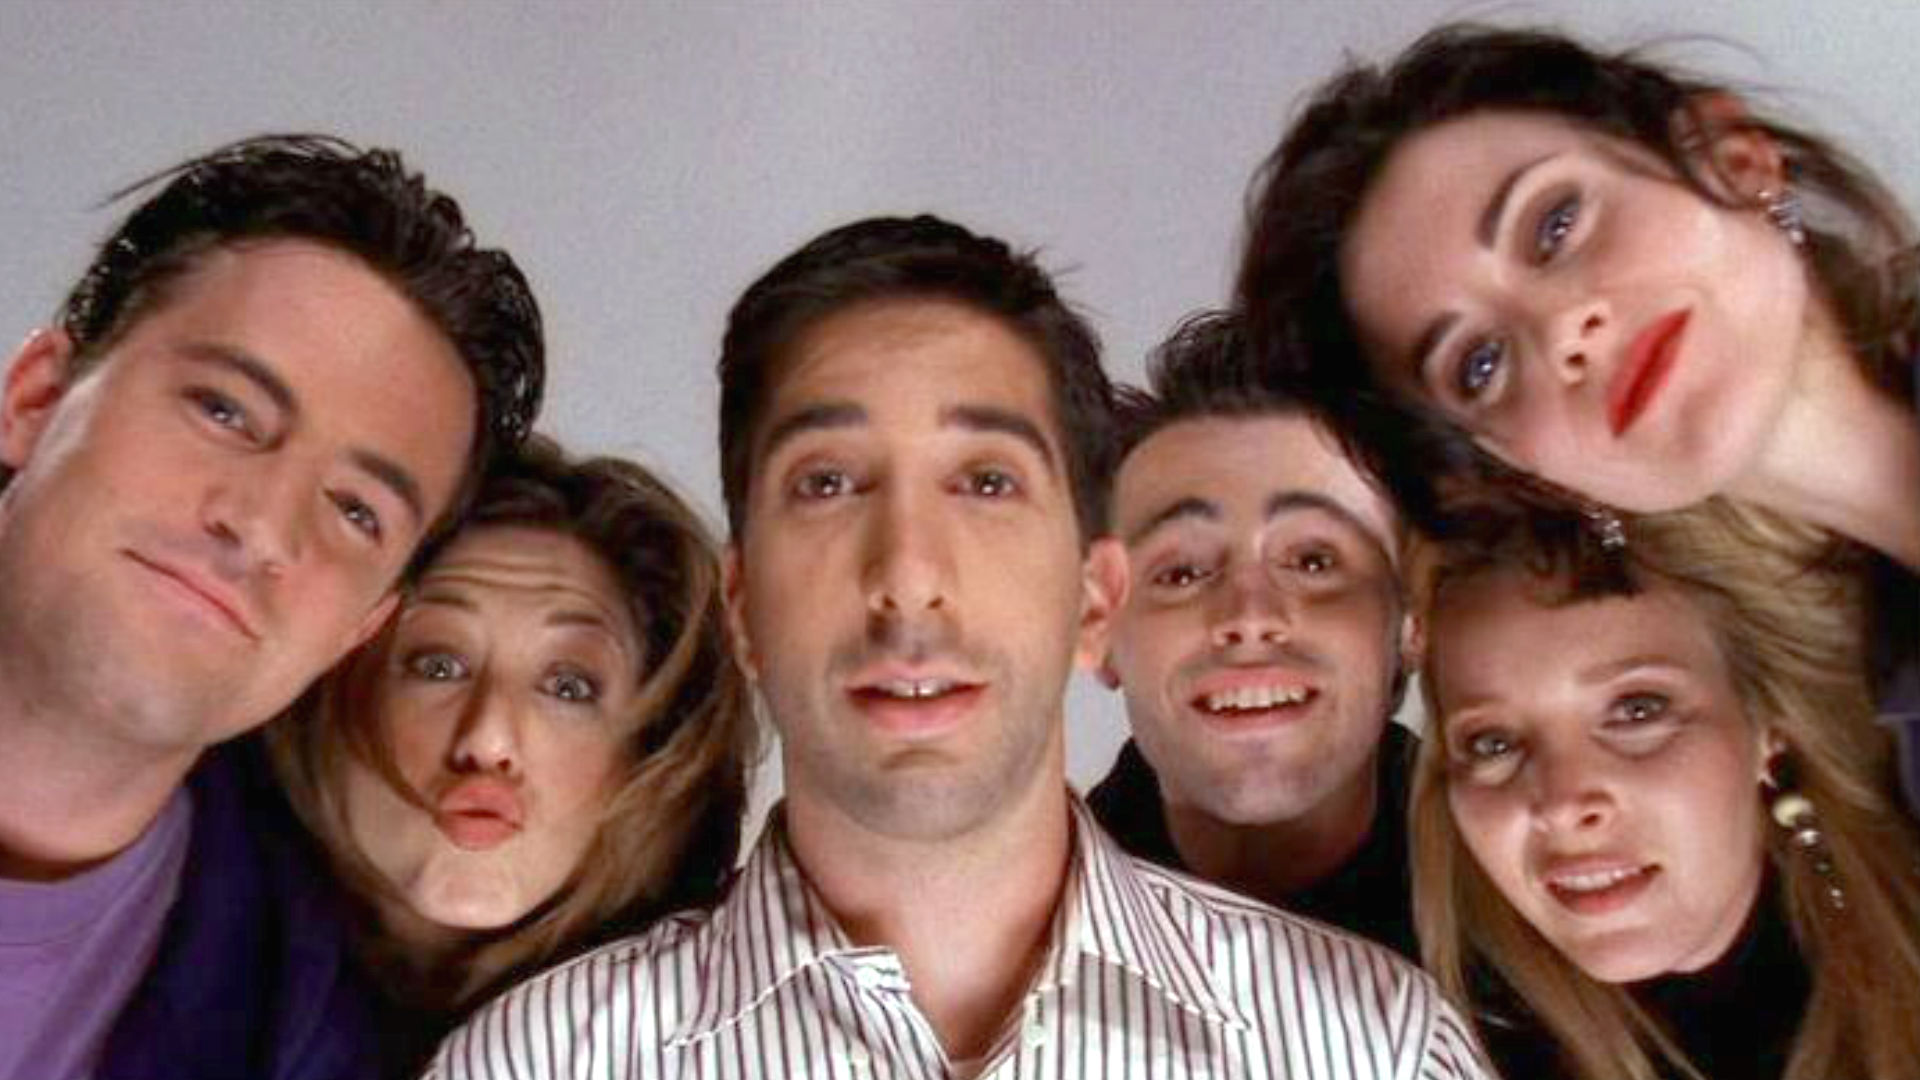 Las redes sociales explotaron con la supuesta salida de “Friends” de la plataforma Netflix. (Foto: Warner Bros.)